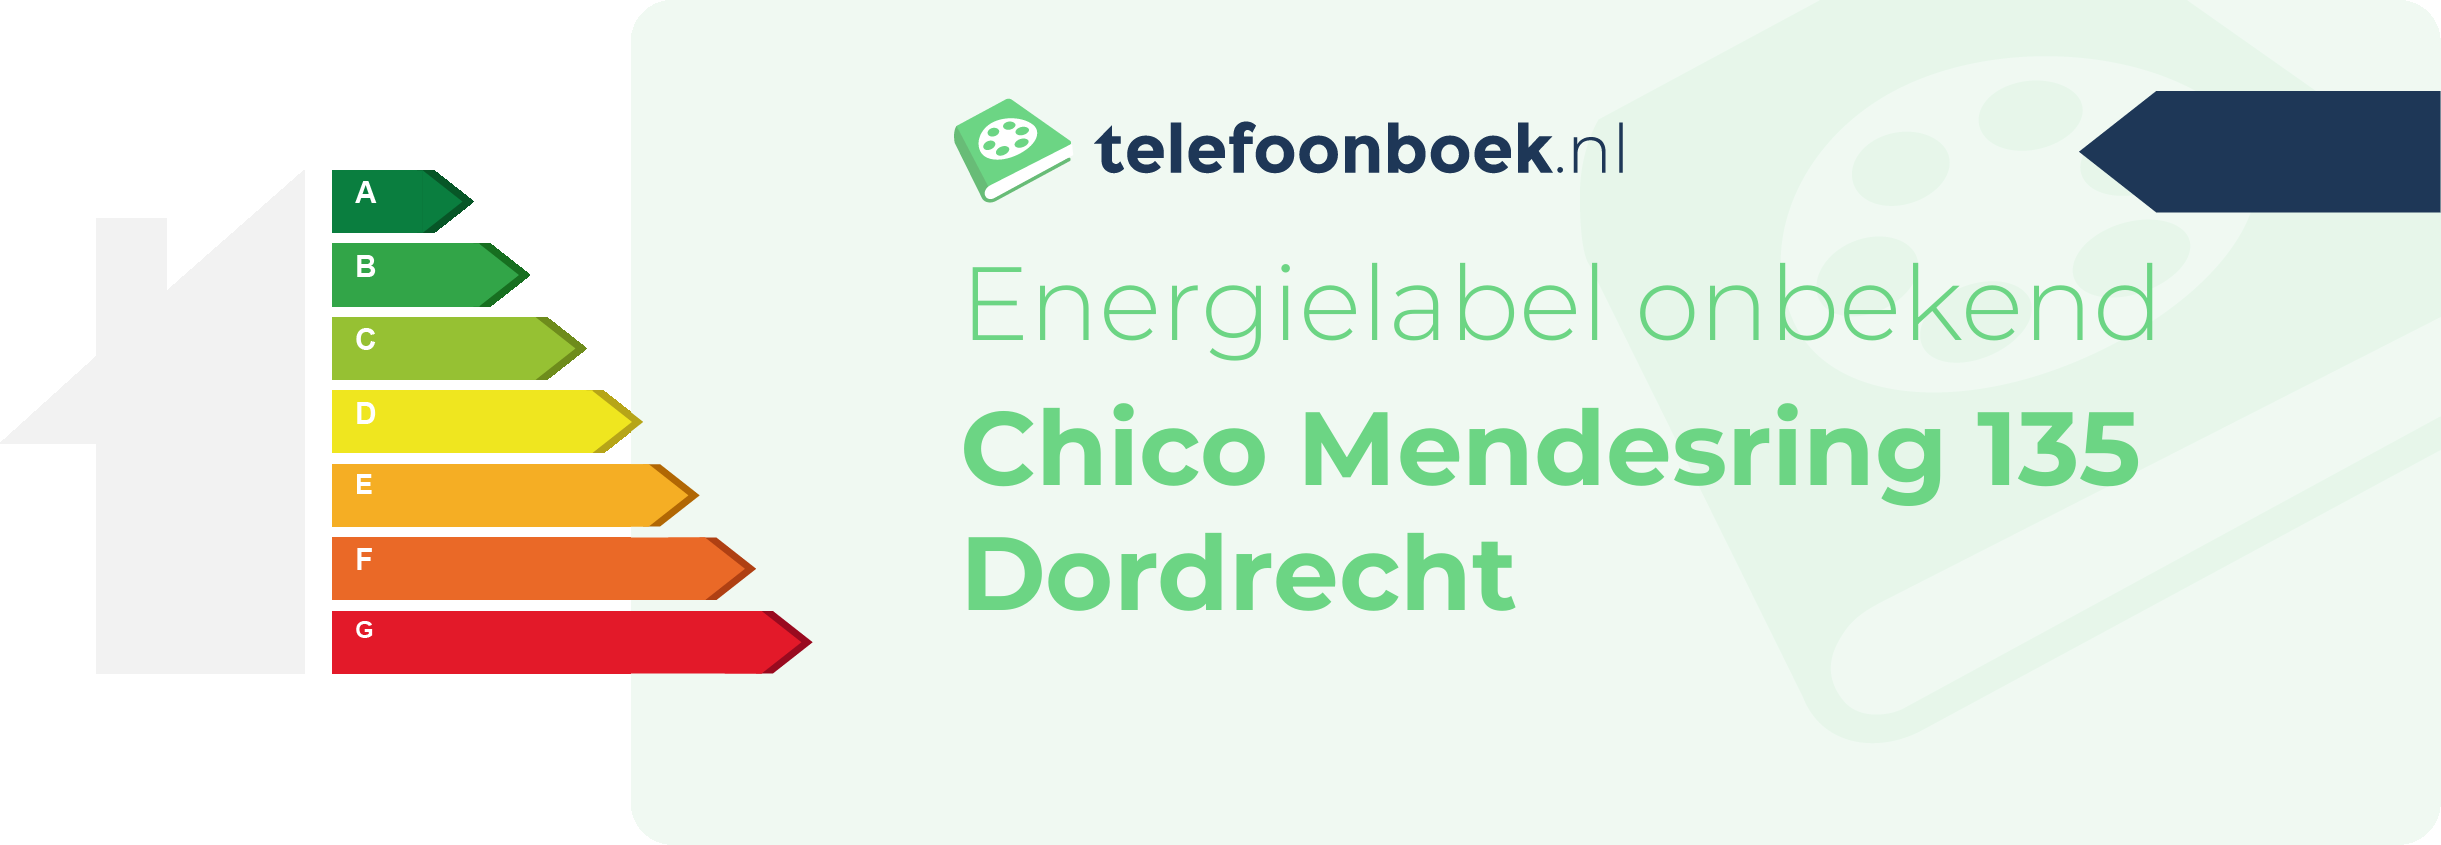 Energielabel Chico Mendesring 135 Dordrecht